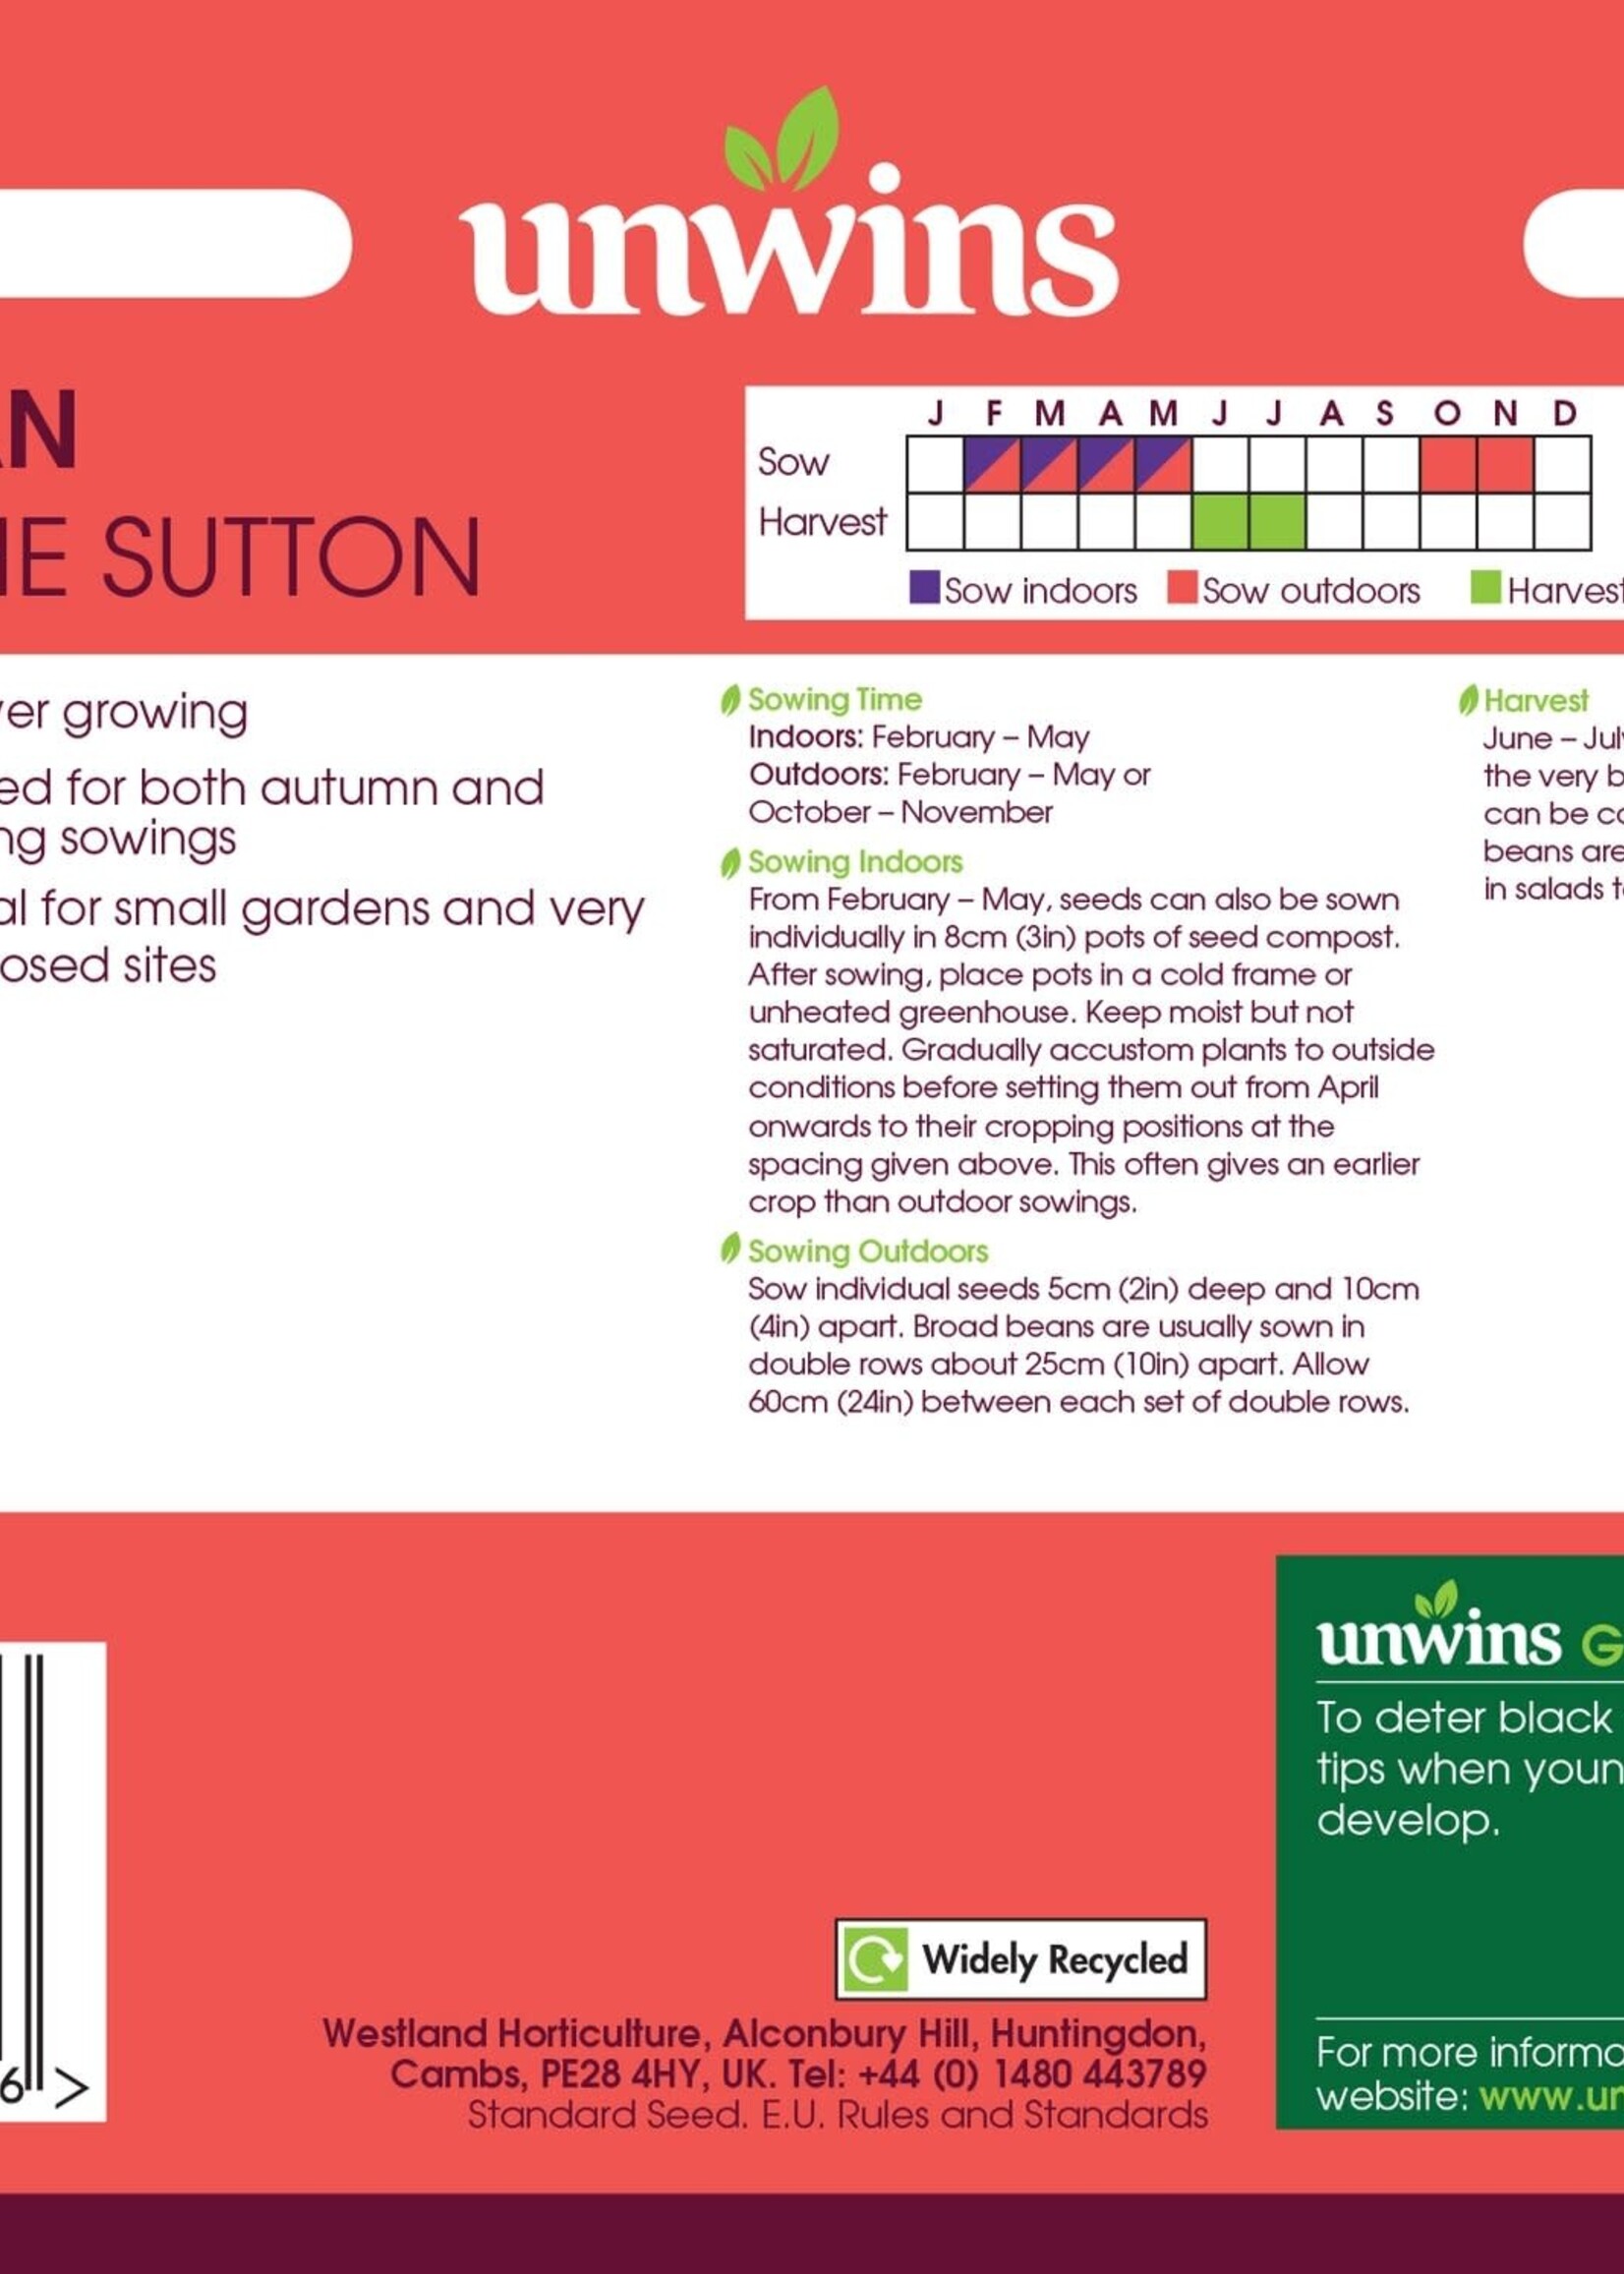 Unwins Broad Bean (Dwarf) - The Sutton